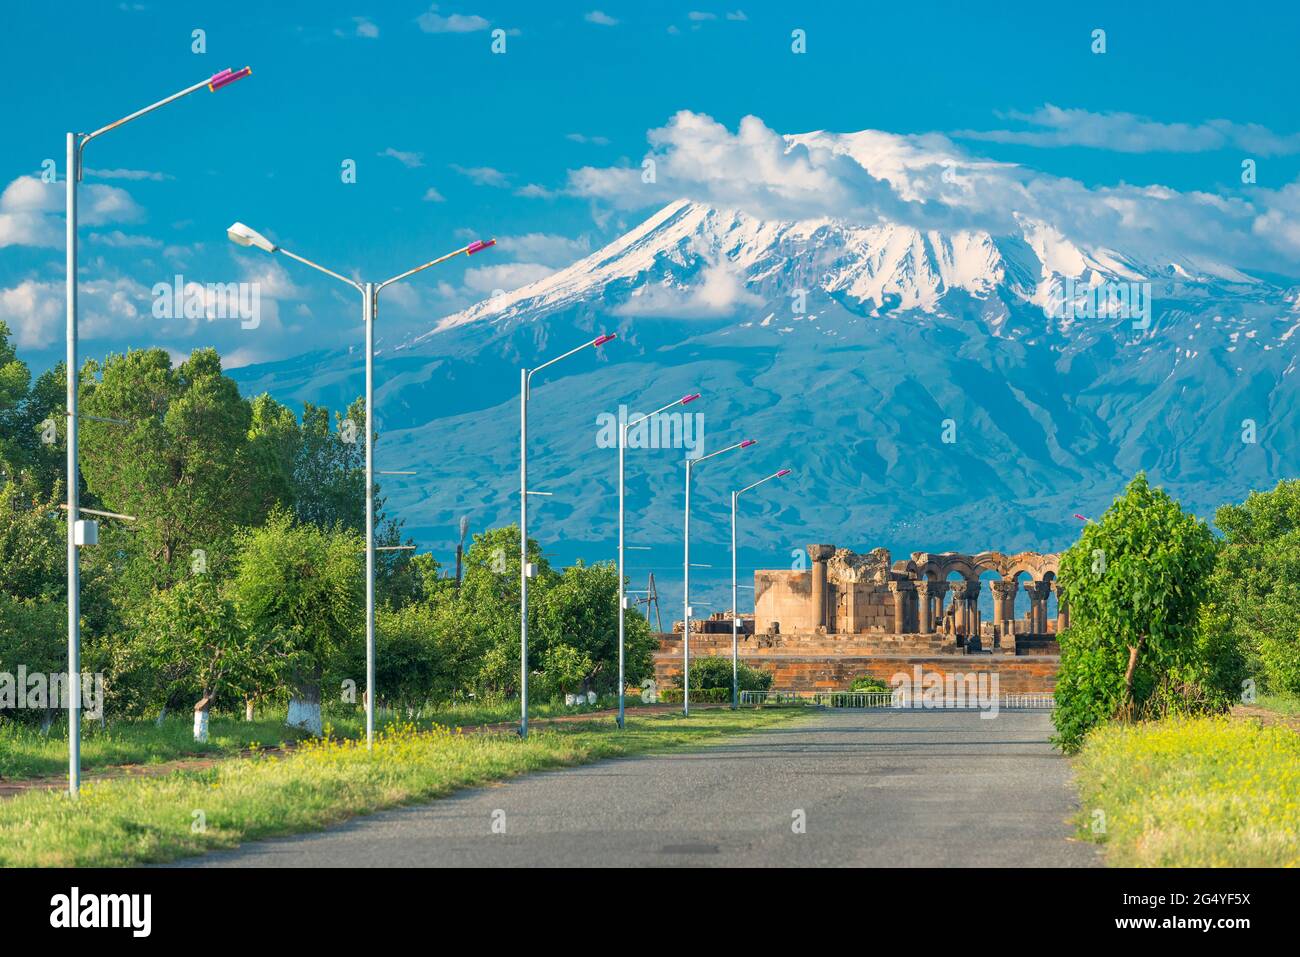 Montaña Big Ararat con un pico nevado y las ruinas del templo Zvartnots, un monumento de Armenia Foto de stock